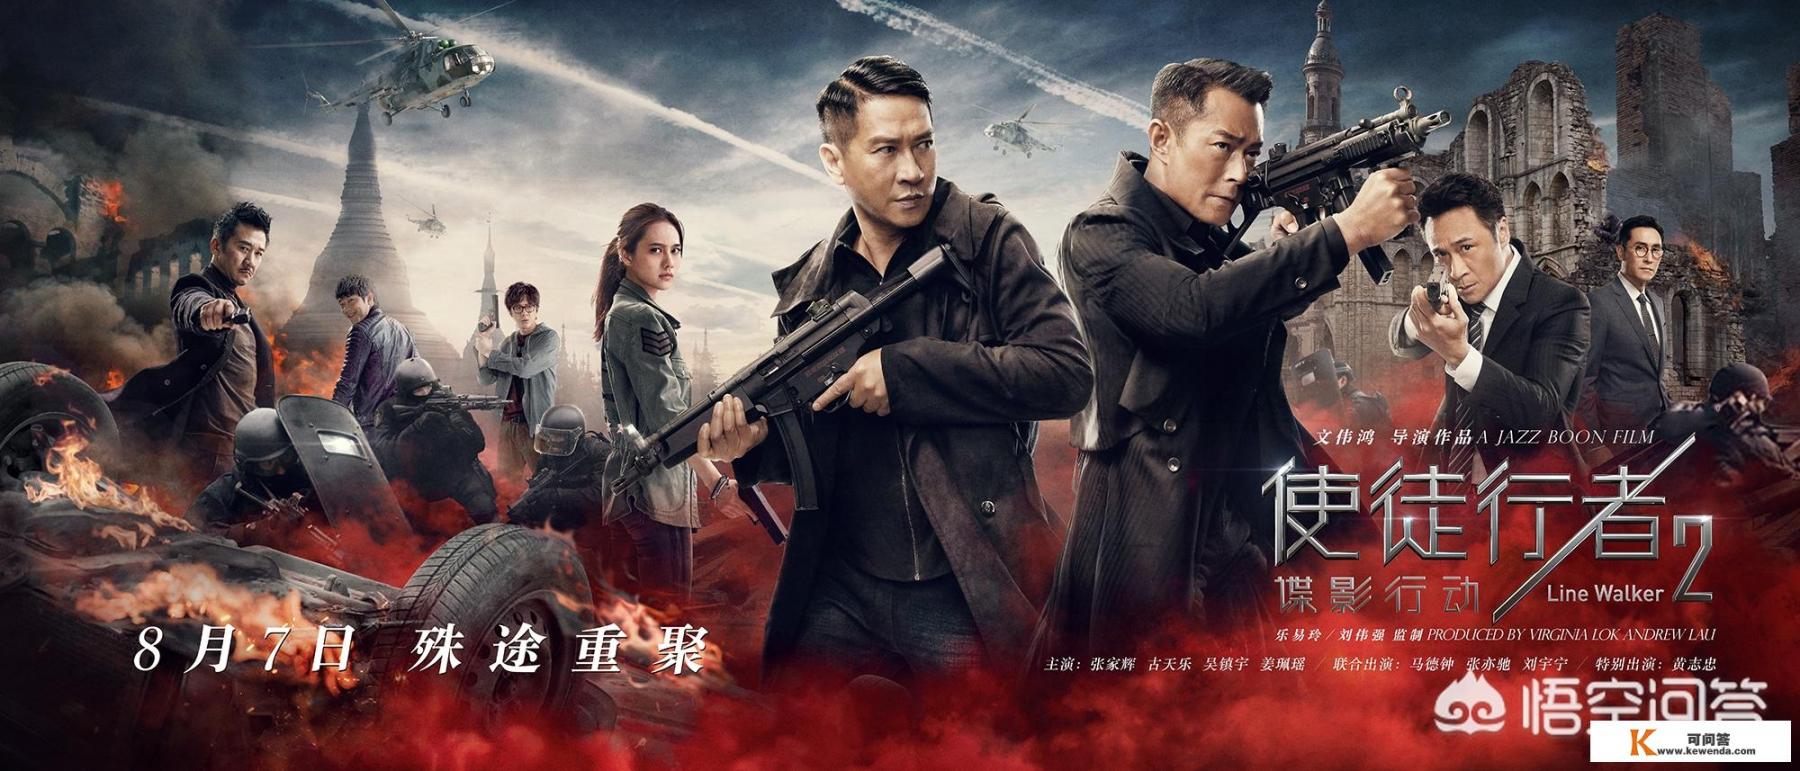 如何评价由古天乐、张家辉和吴镇宇主演的新电影《使徒行者2：谍影行动》